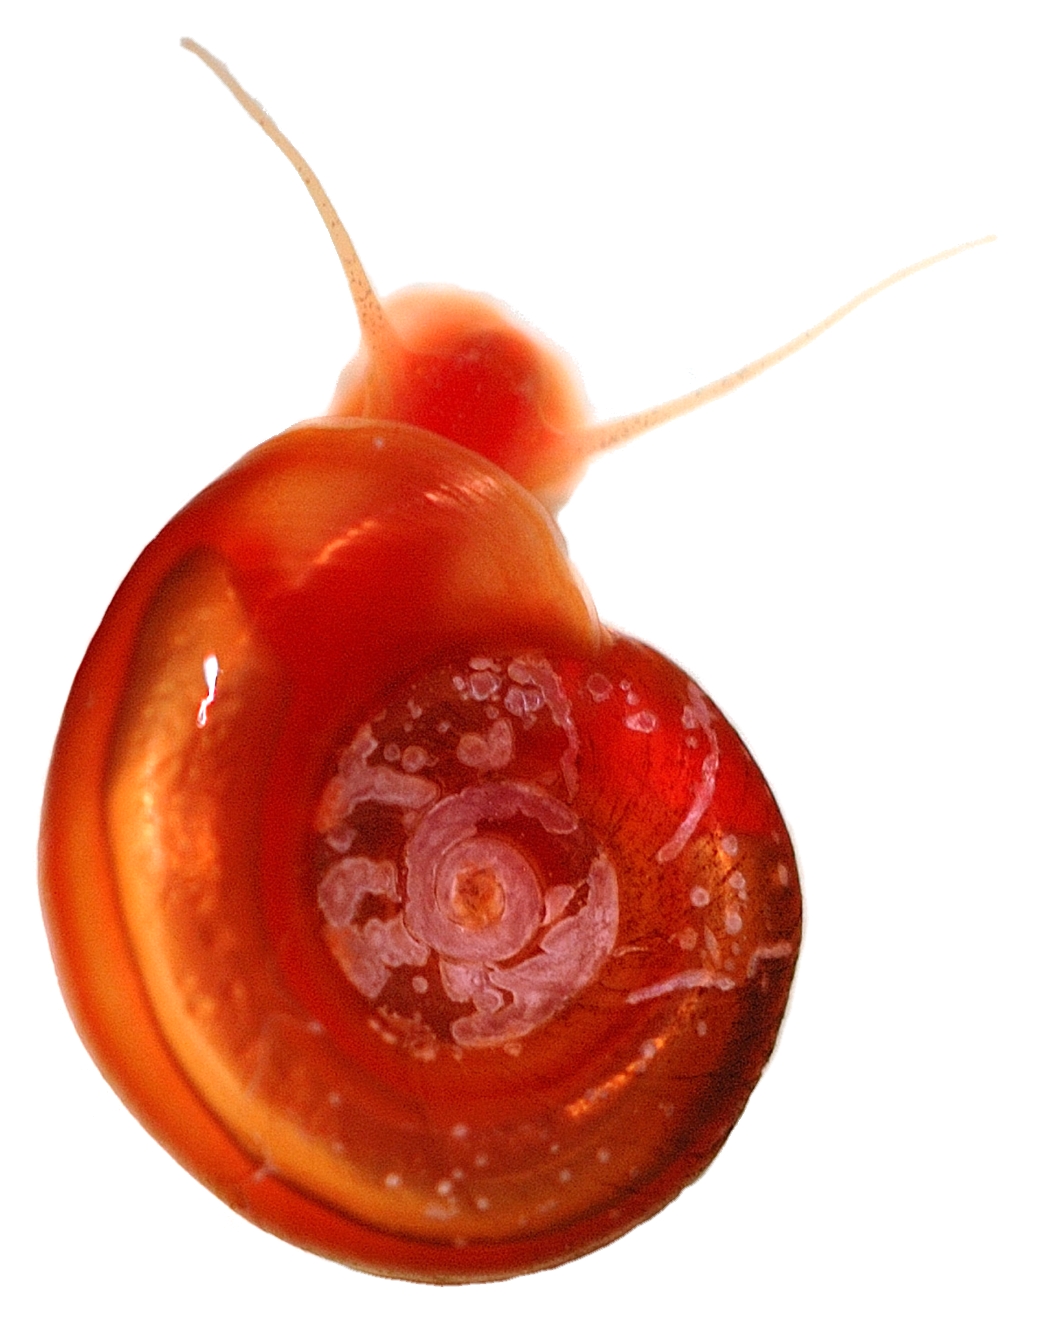 schistosomiasis snail species